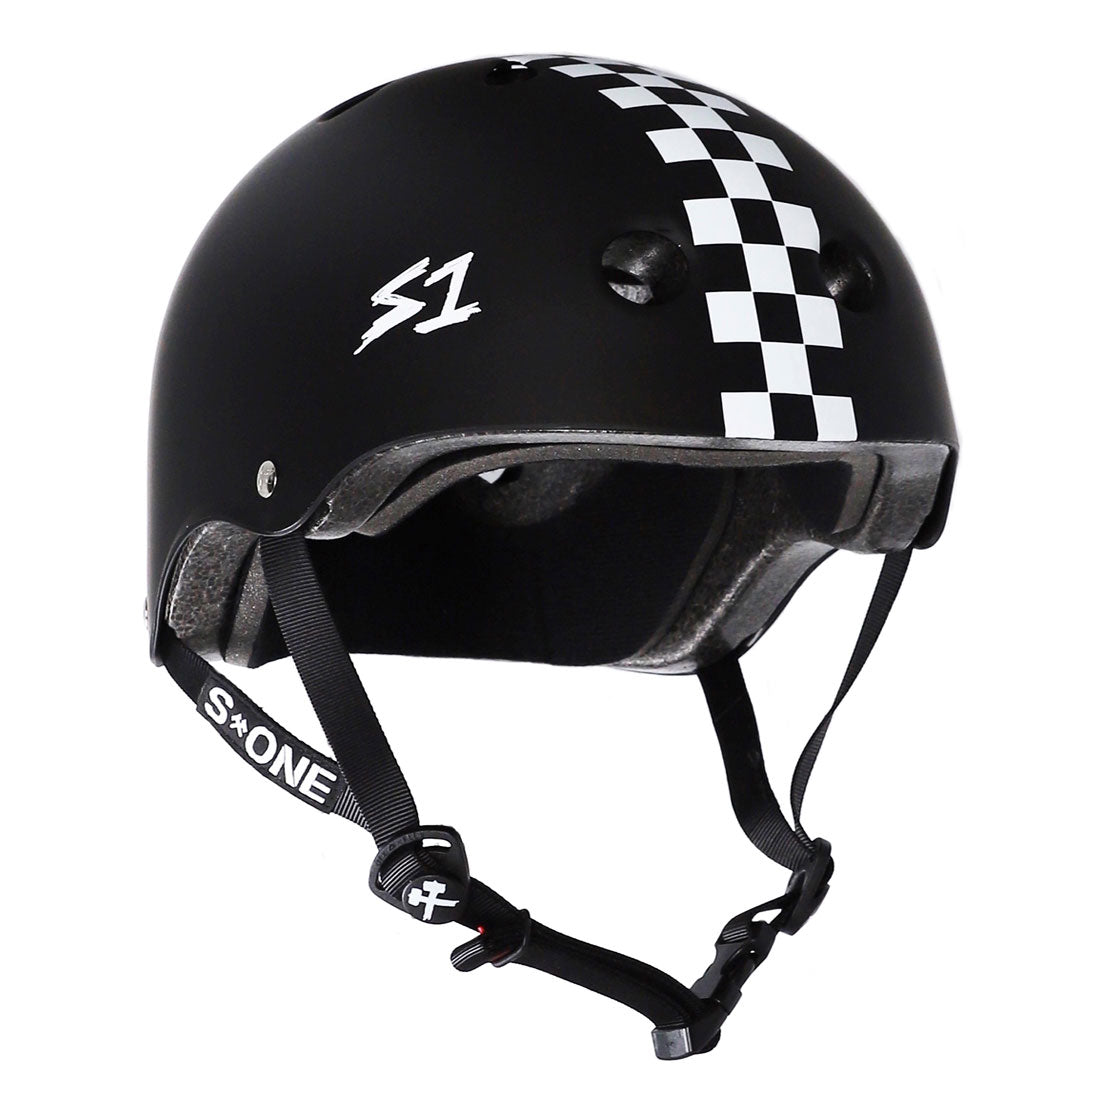 S-One Lifer Helmet - Black Matte/Checkers Helmets